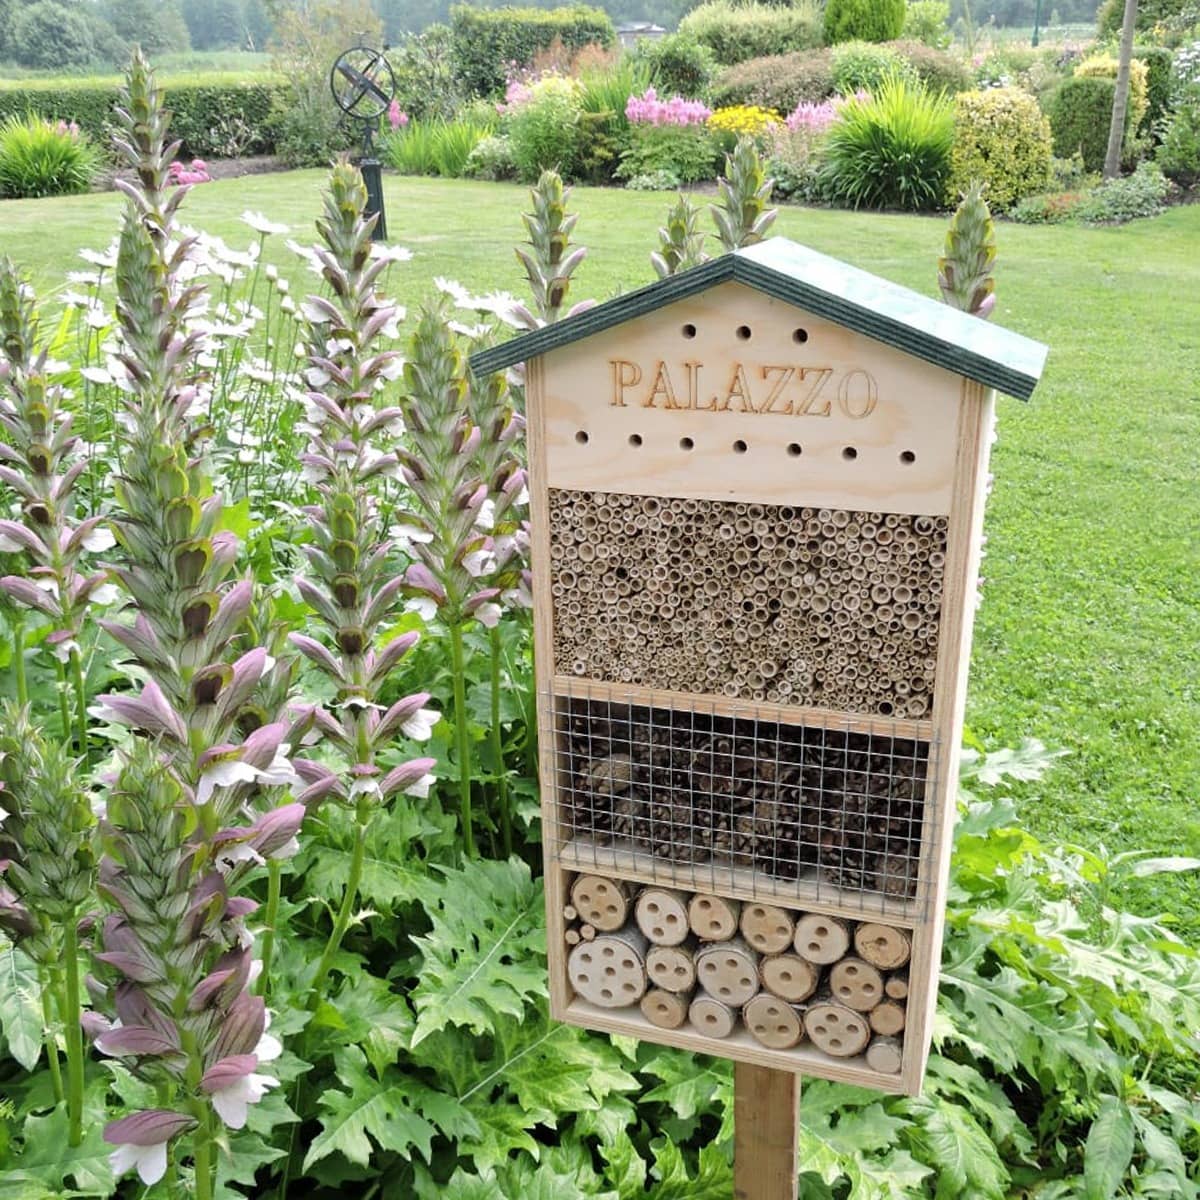 Insectenhuis Palazzo zorgt voor een bloemrijke tuin